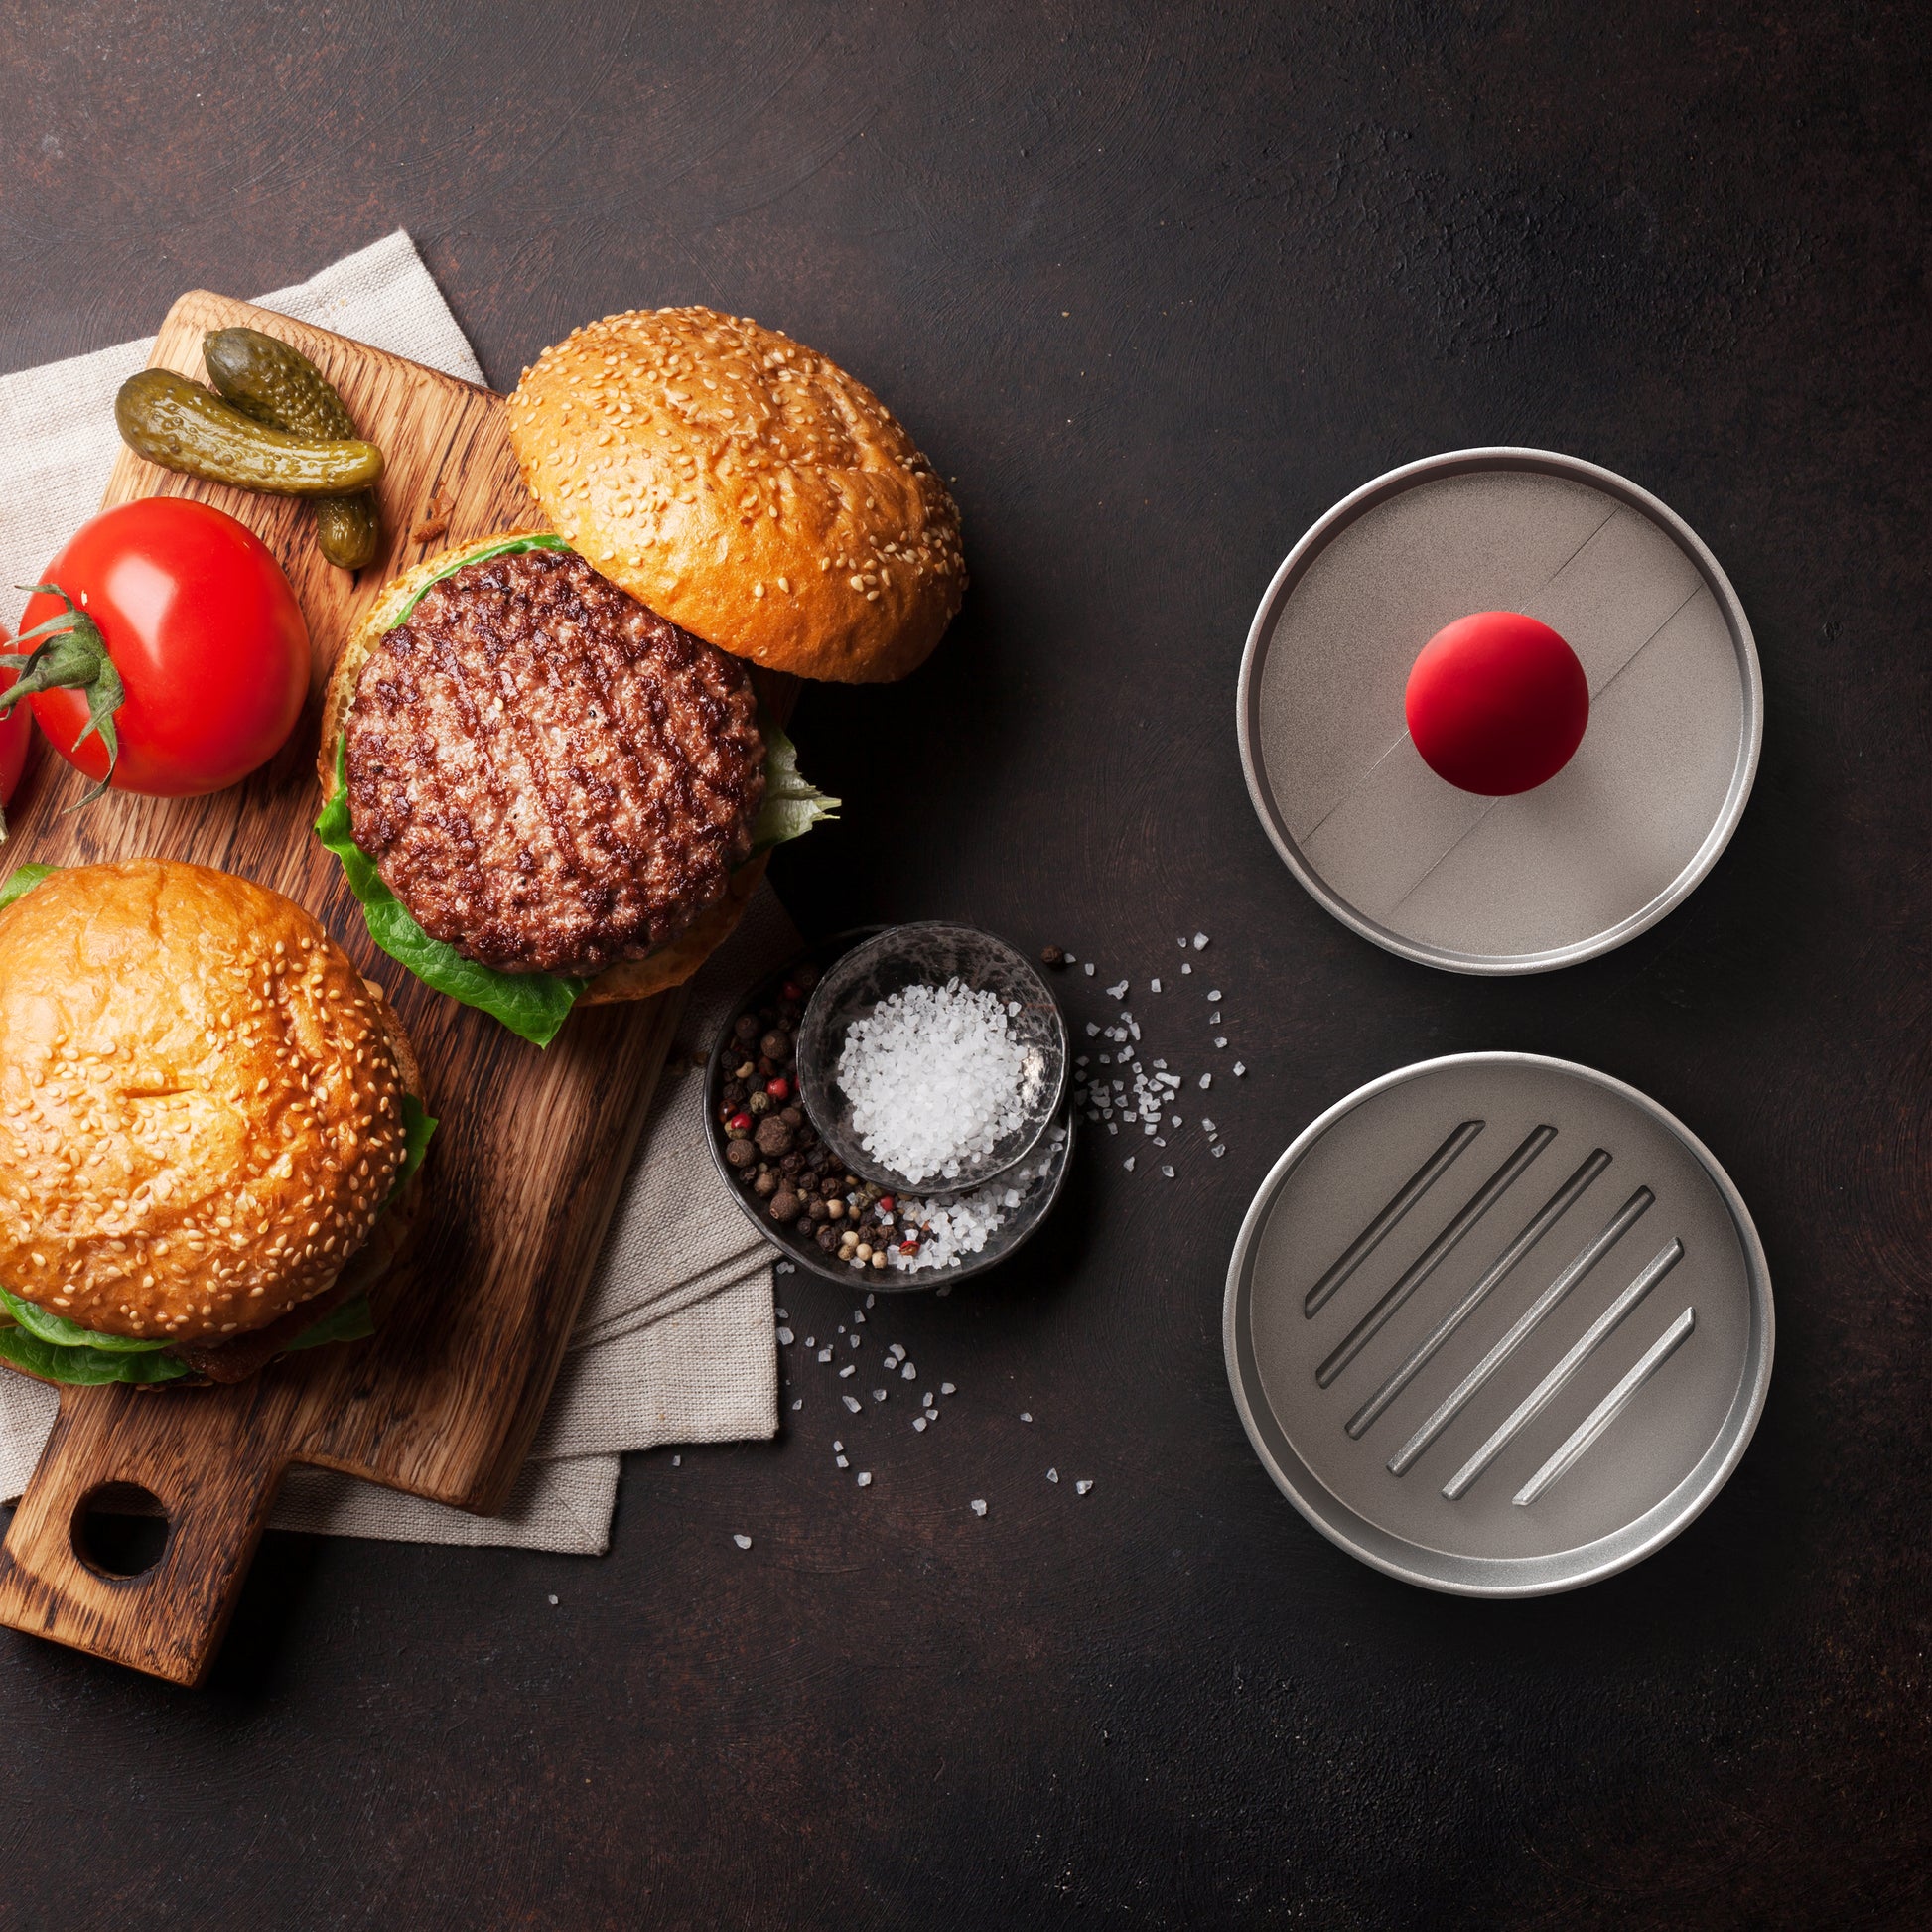 Burgerpresse mit rotem Stempel, unmontiert neben zwei fertigen Burgern auf einem Schneidebrett mit Zutaten.